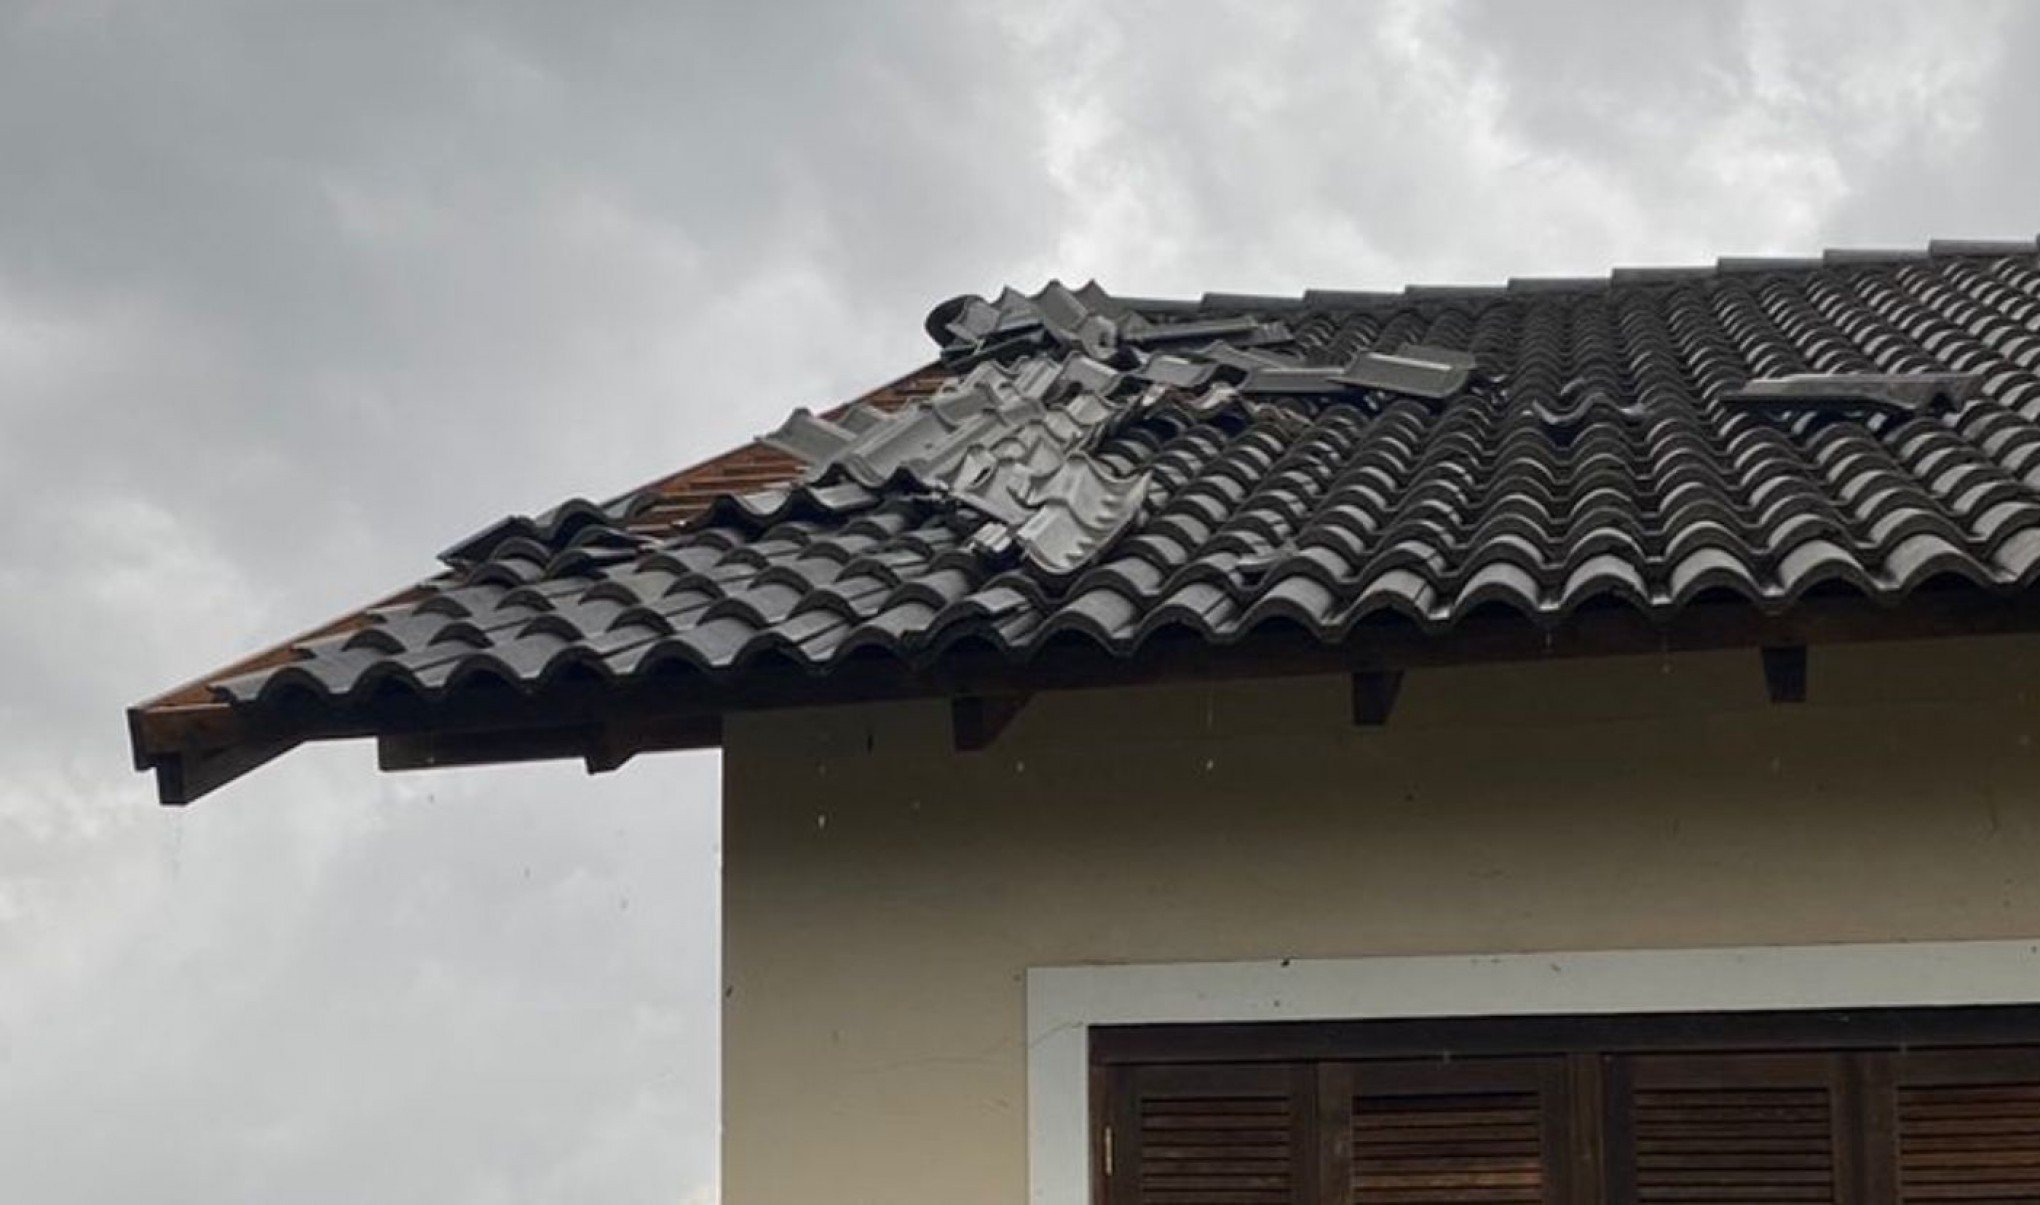 TEMPESTADE: Santa Cruz do Sul tem mais de 600 imóveis danificados após vendaval e granizo